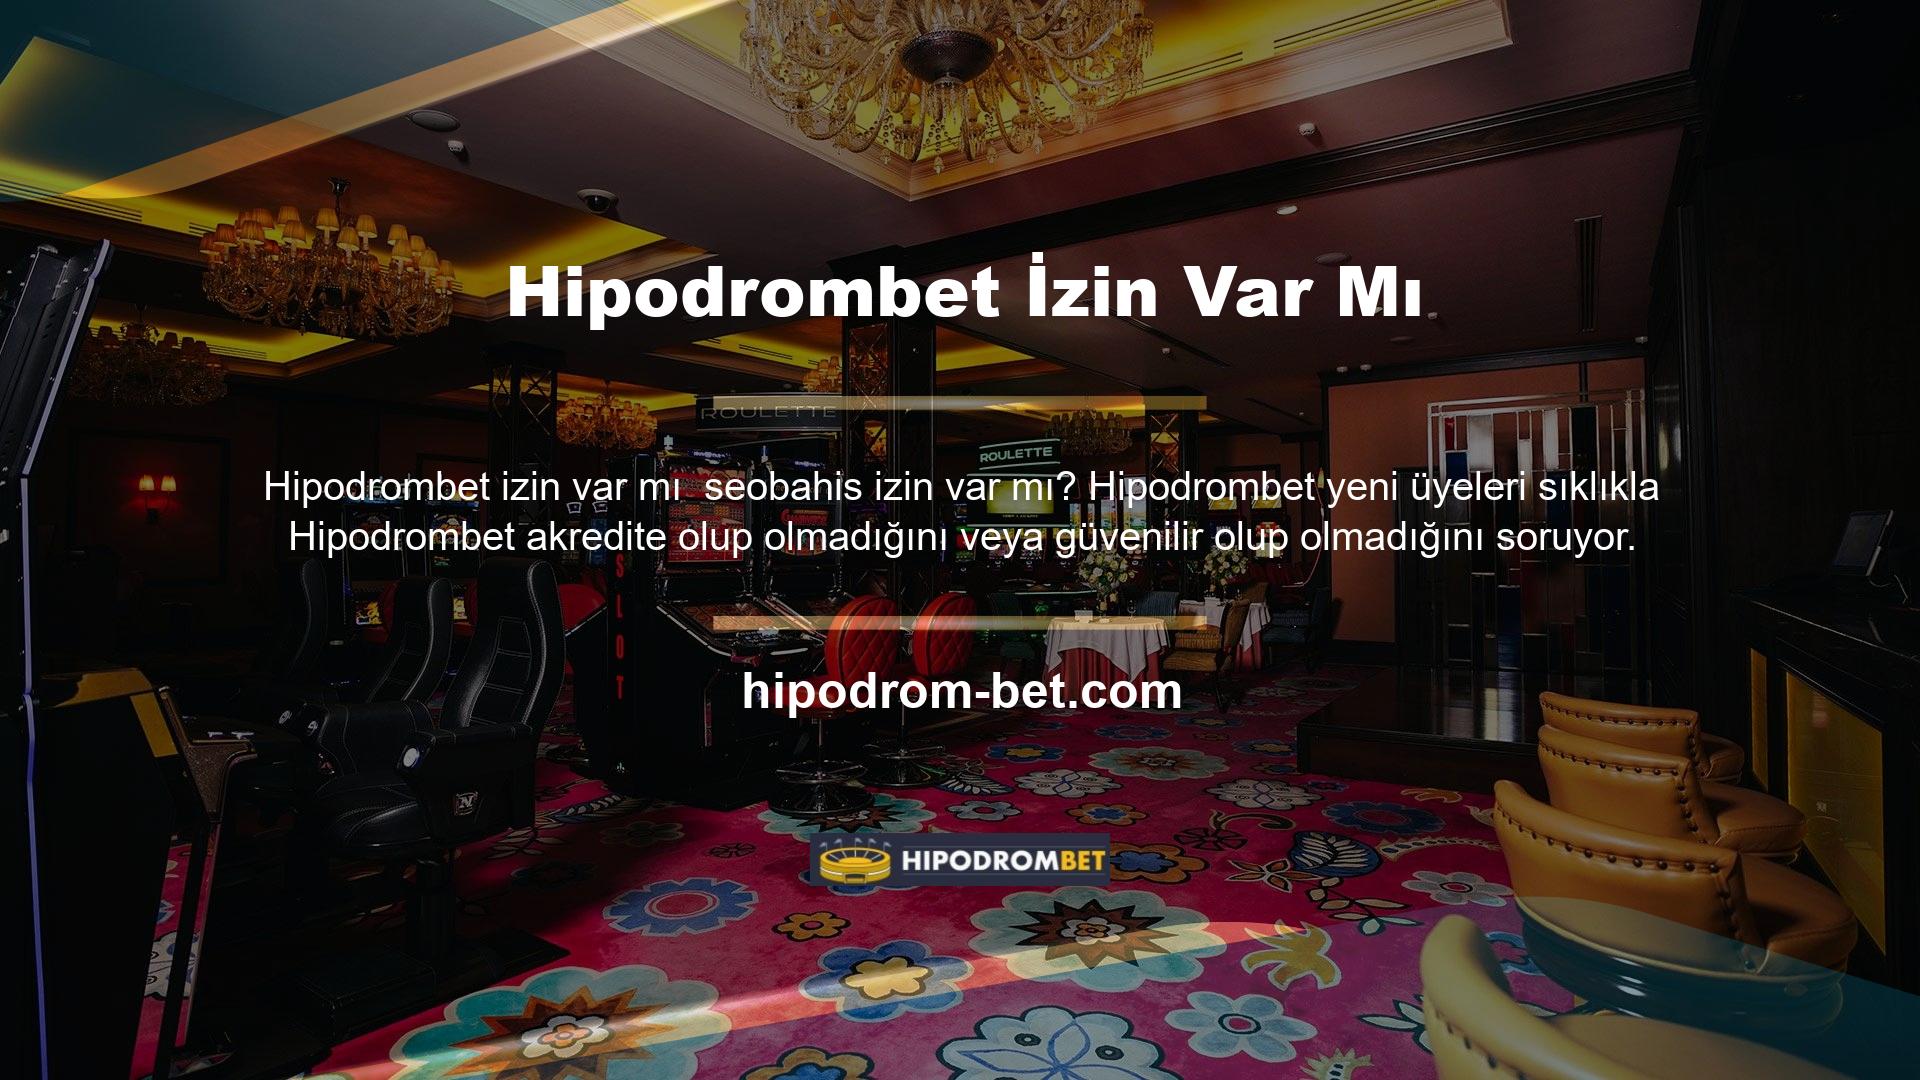 Türkiye'de oyun oynamak veya parayla bahis oynamak isteyenler için ana sayfaya bir göz atın, Hipodrombet markasının neler getirdiğini göreceksiniz